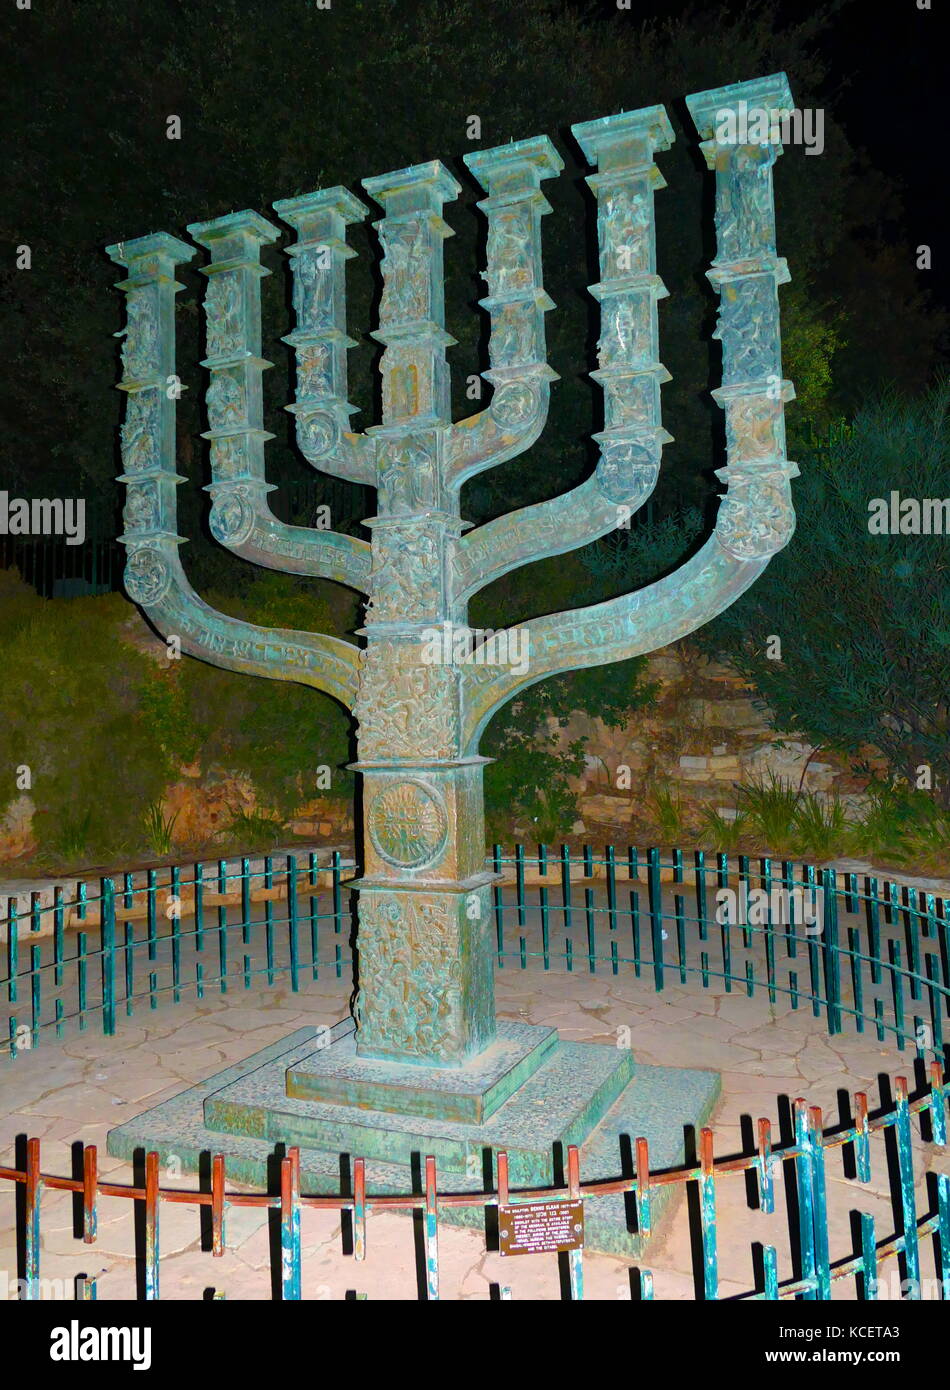 La Knesset Menorah, è un bronzo Menorah 4,30 metri di altezza, 3,5 metri di larghezza e pesa 4 tonnellate. Si trova di fronte alla Knesset. È stato progettato da Benno Elkan (1877-1960) ed è stato presentato alla Knesset come un dono dal parlamento del Regno Unito il 15 aprile 1956 in onore dell'ottavo anniversario della indipendenza israeliana. Foto Stock